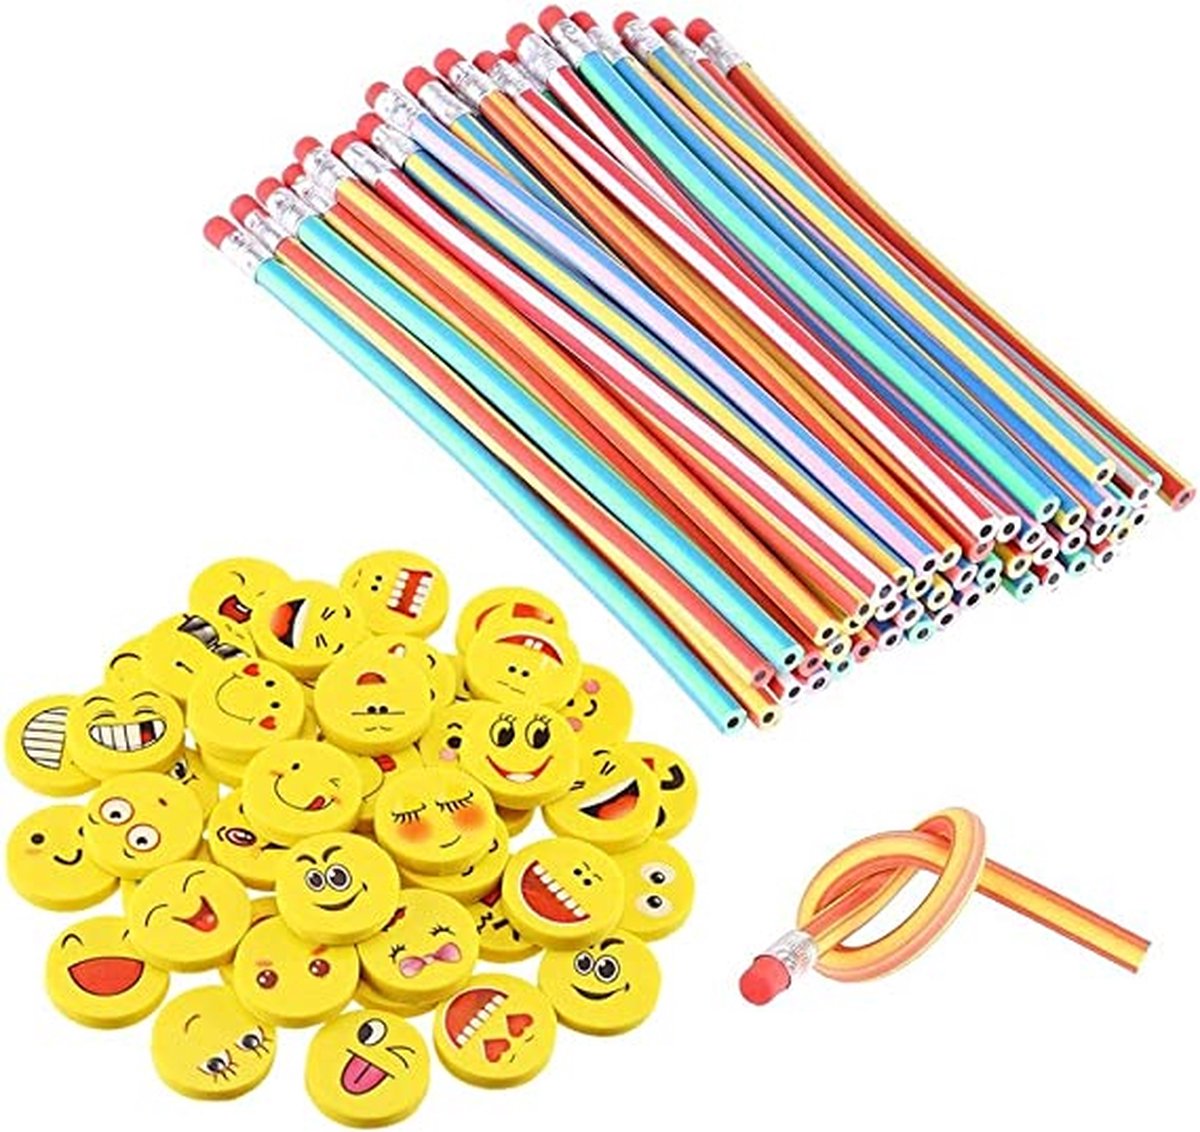 flexibele Bendy potloden, magische Bend potloden voor kinderen, flexible bendy pencils 80